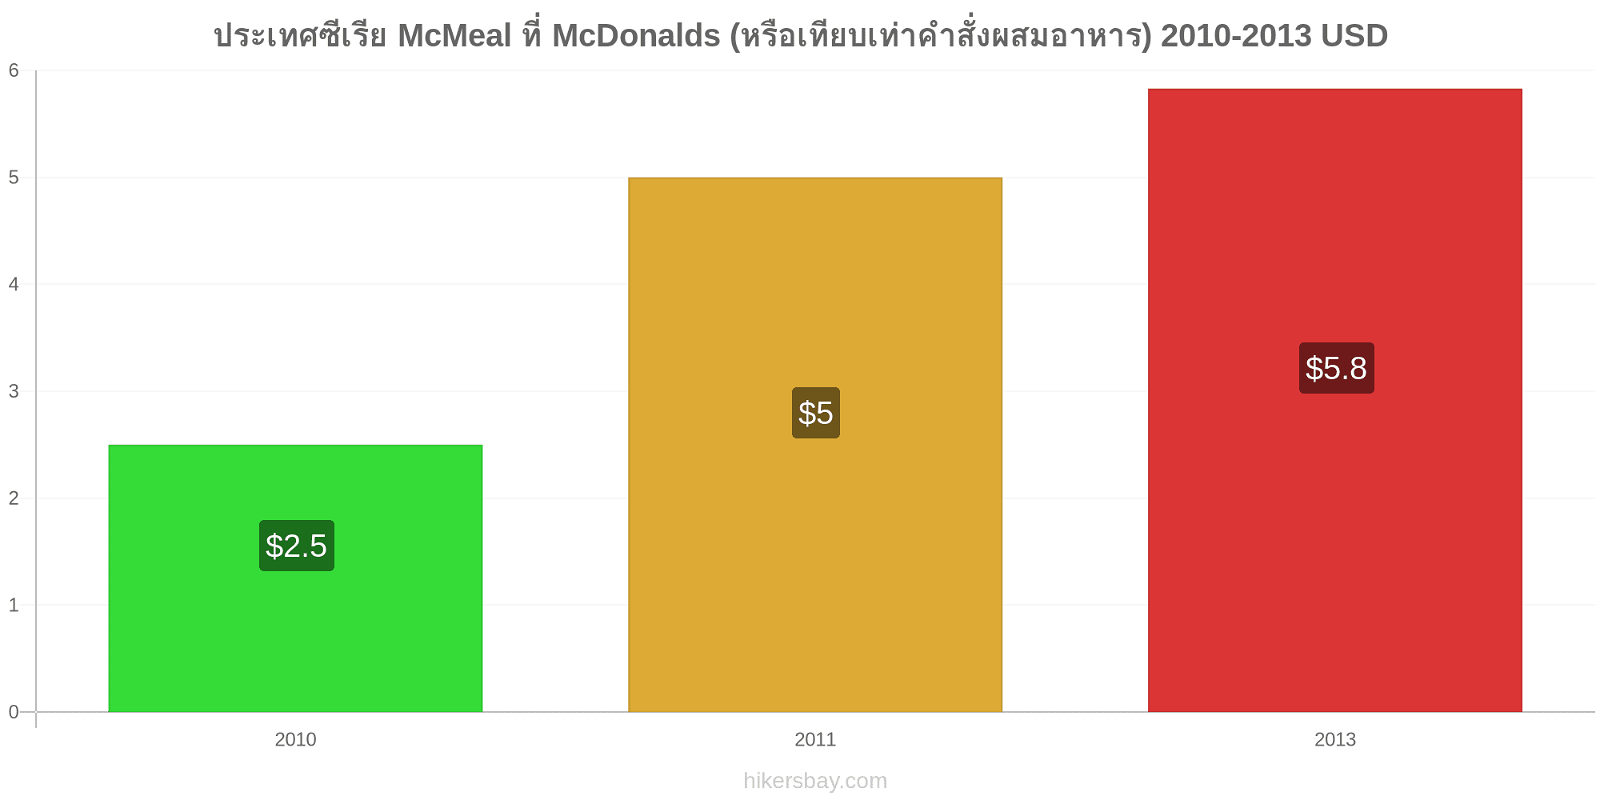 ประเทศซีเรีย การเปลี่ยนแปลงราคา McMeal ที่ McDonalds (หรือเทียบเท่าคำสั่งผสมอาหาร) hikersbay.com